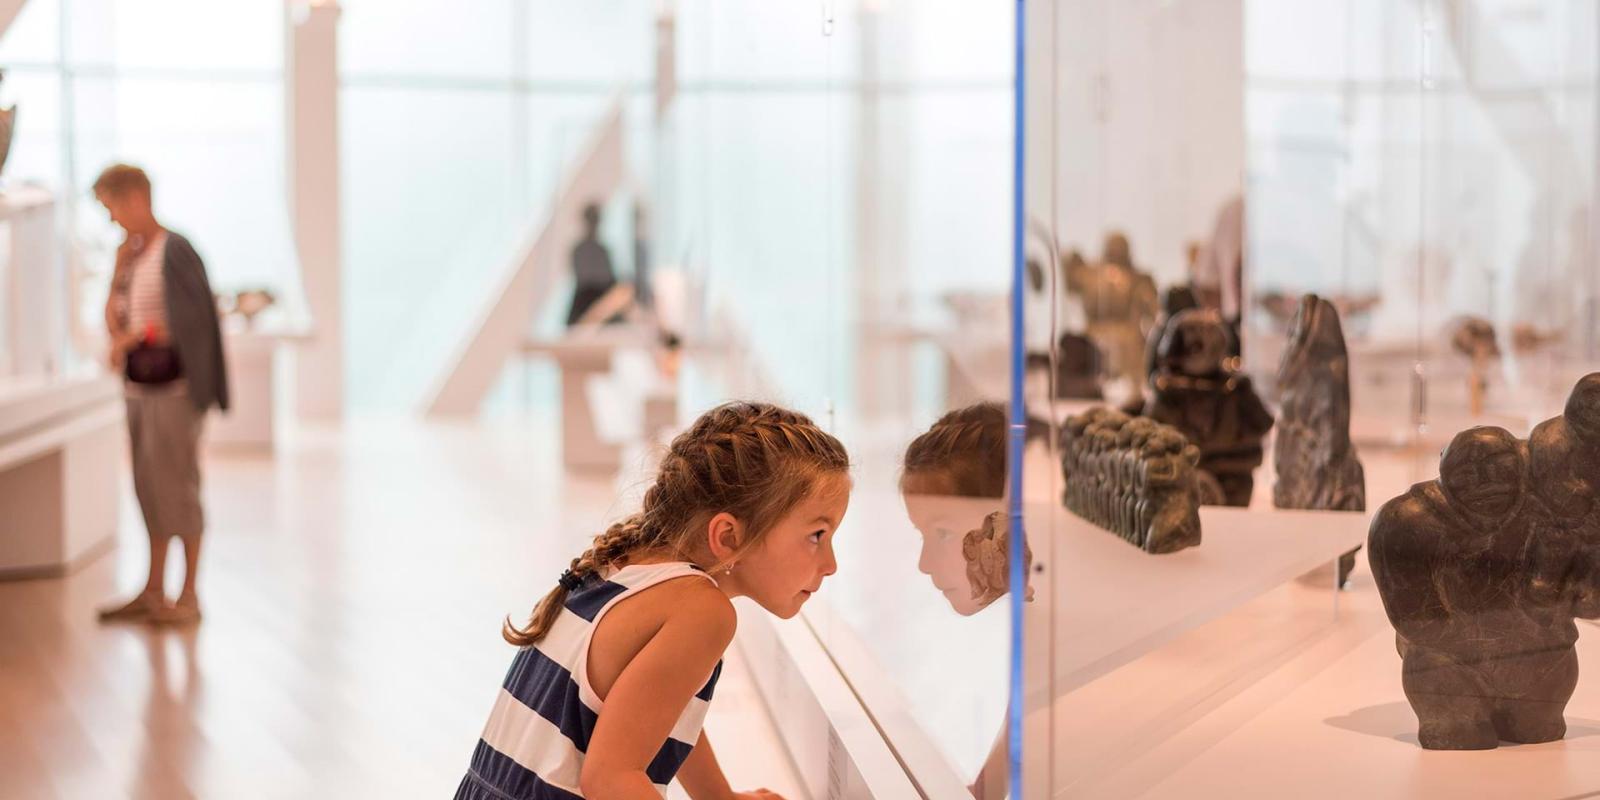 Une fillette regarde à travers une vitrine dans une exposition au Musée national des beaux-arts du Québec.